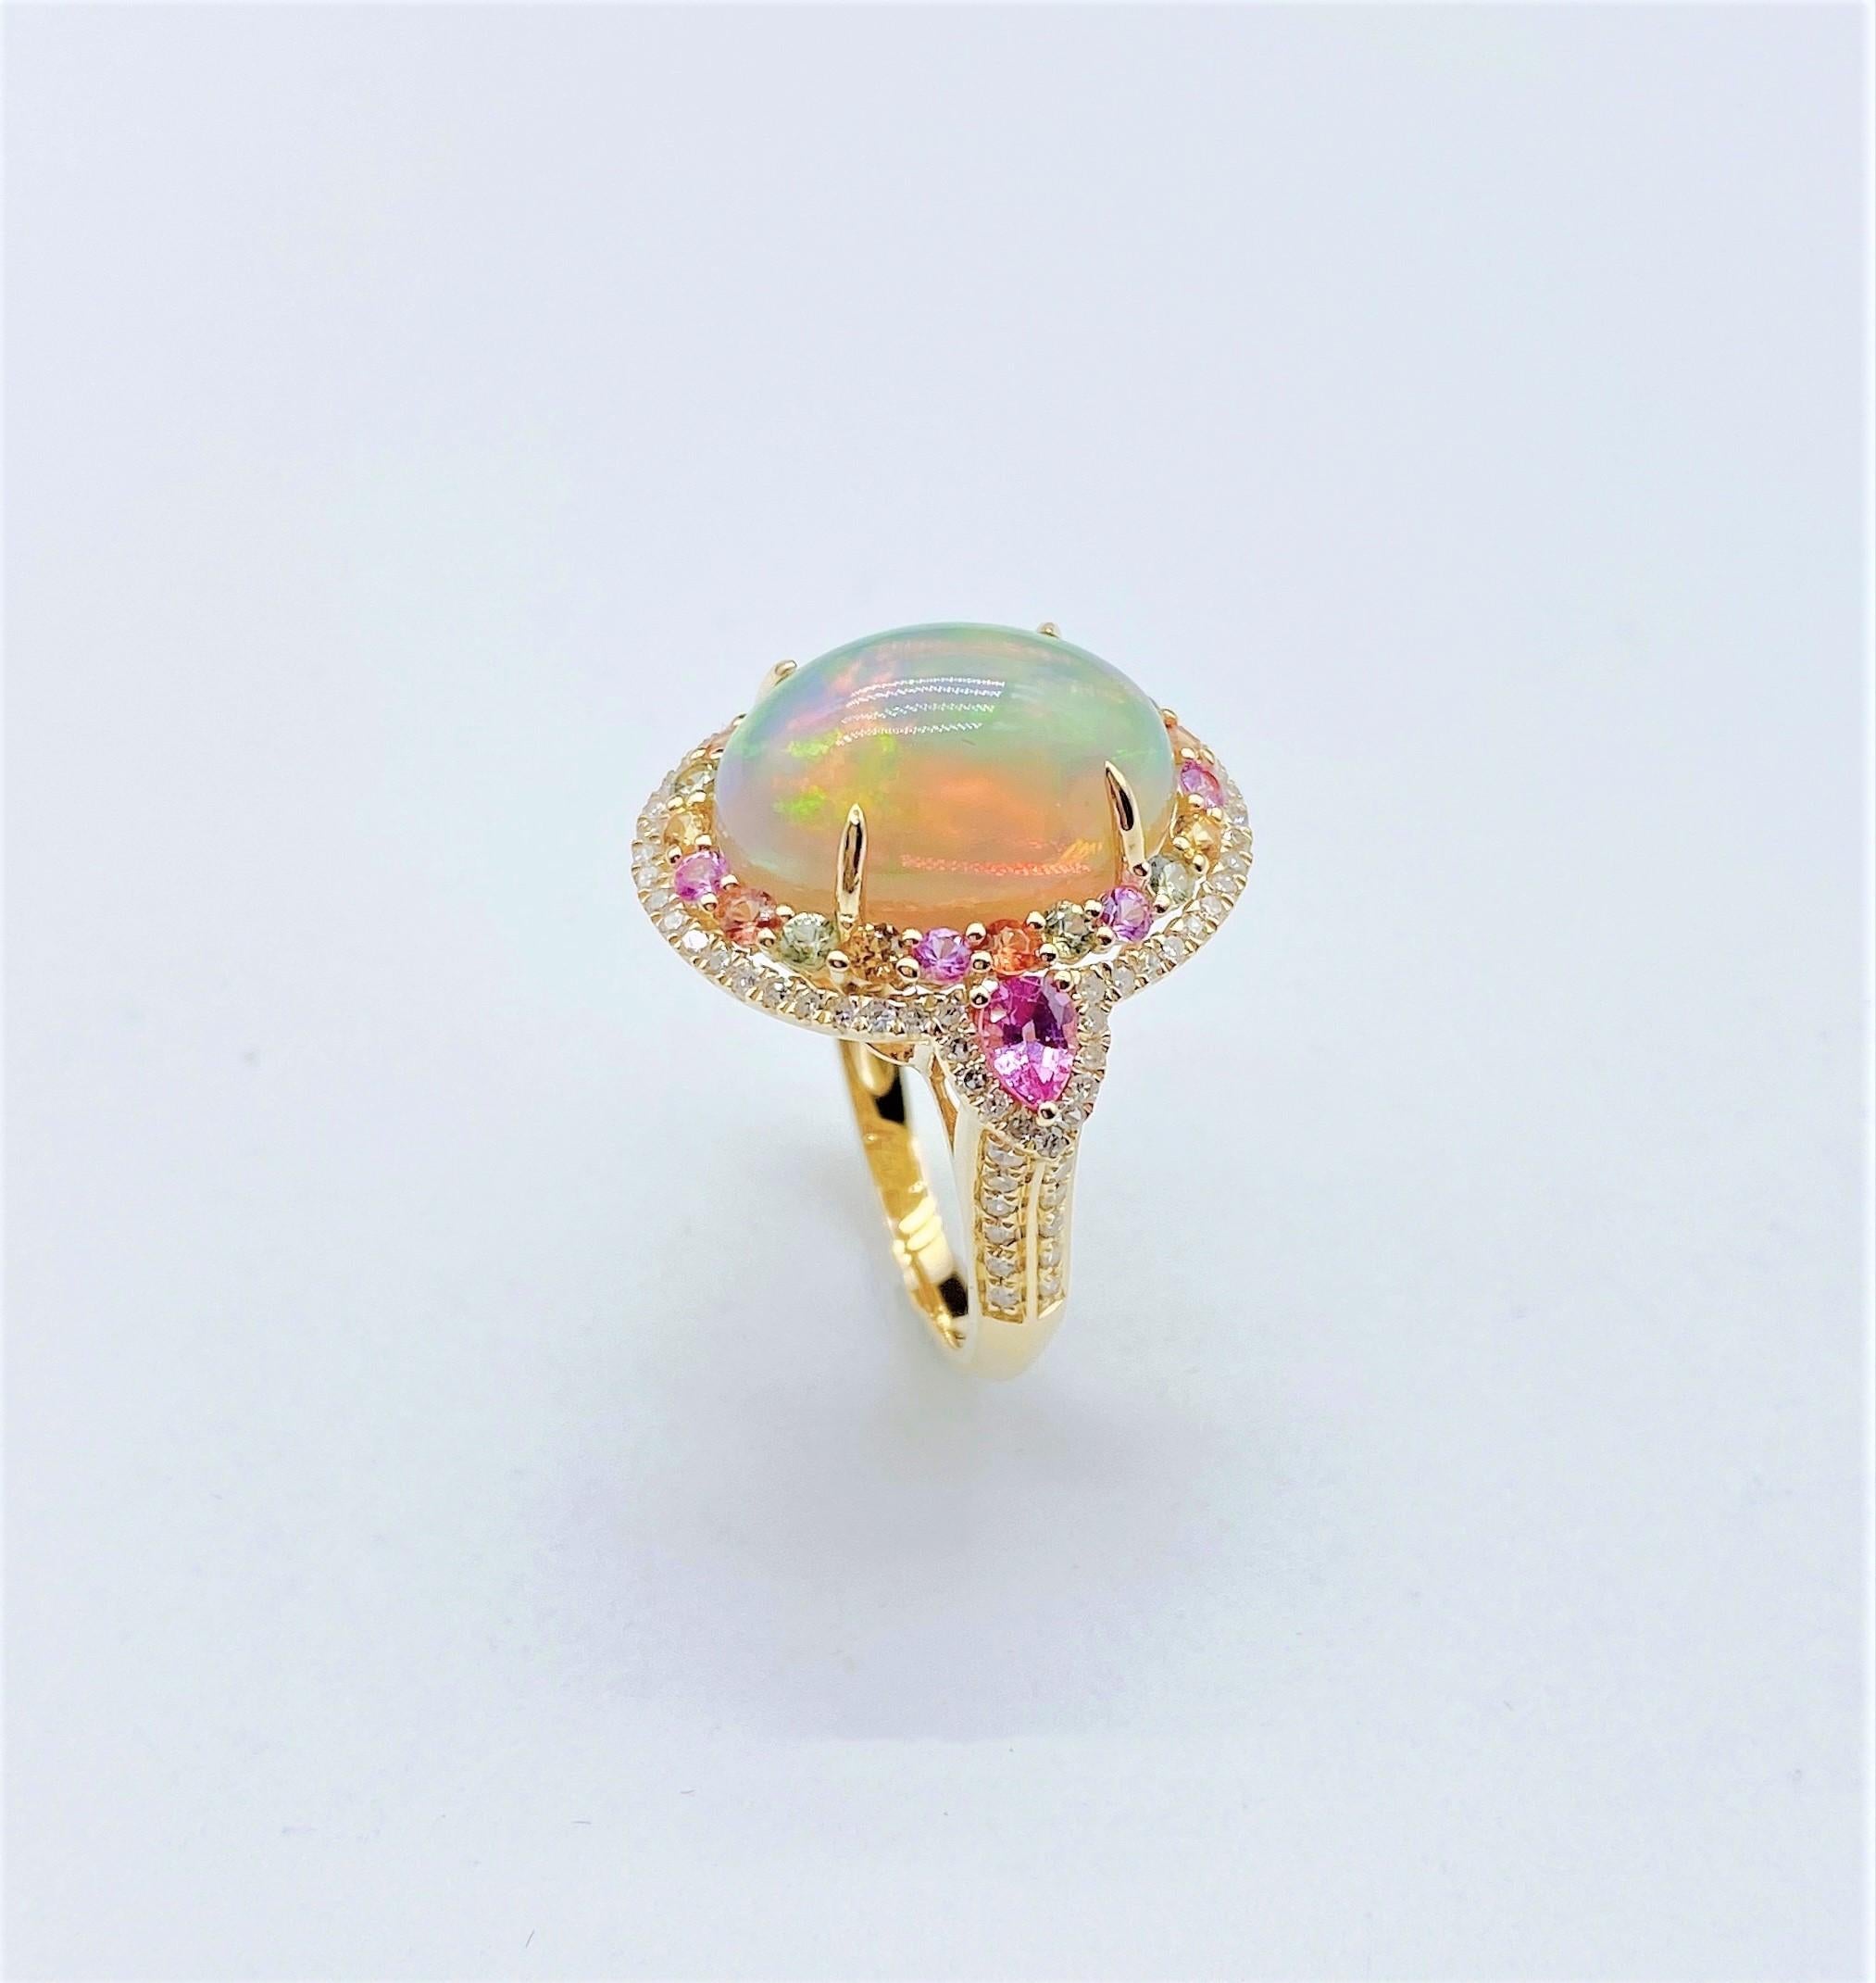 L'article suivant que nous vous proposons est une bague en or 18KT rare et important Radiant Large Fancy Fiery White Opal Diamond Pink Sapphire. La bague est composée d'une magnifique opale blanche arc-en-ciel entourée d'un magnifique halo de